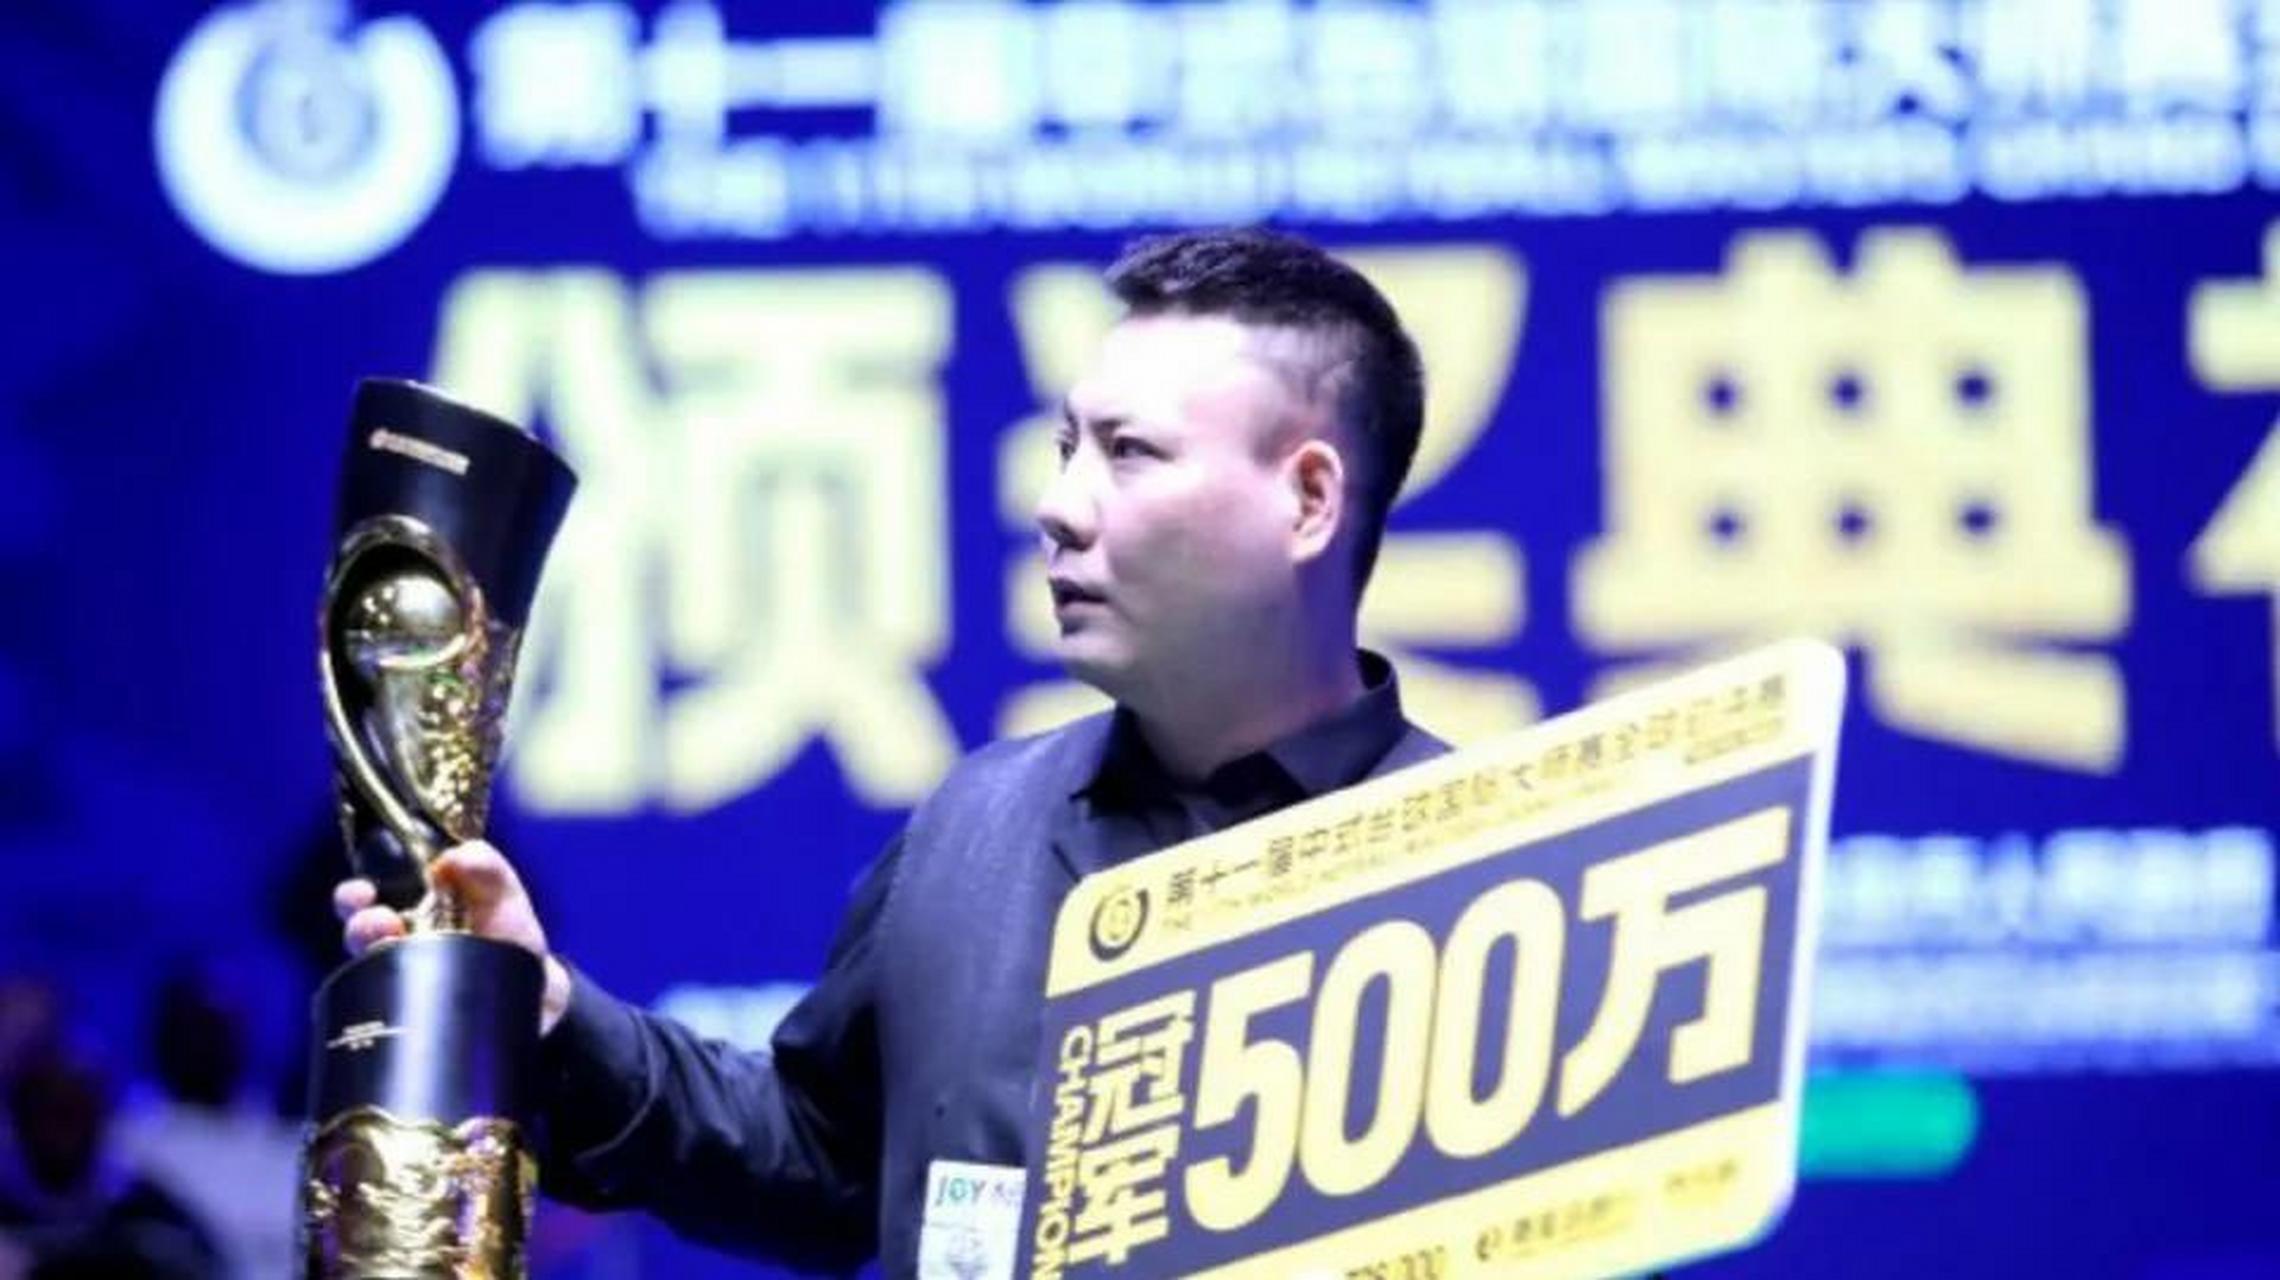 中式台球世锦赛奖金图片